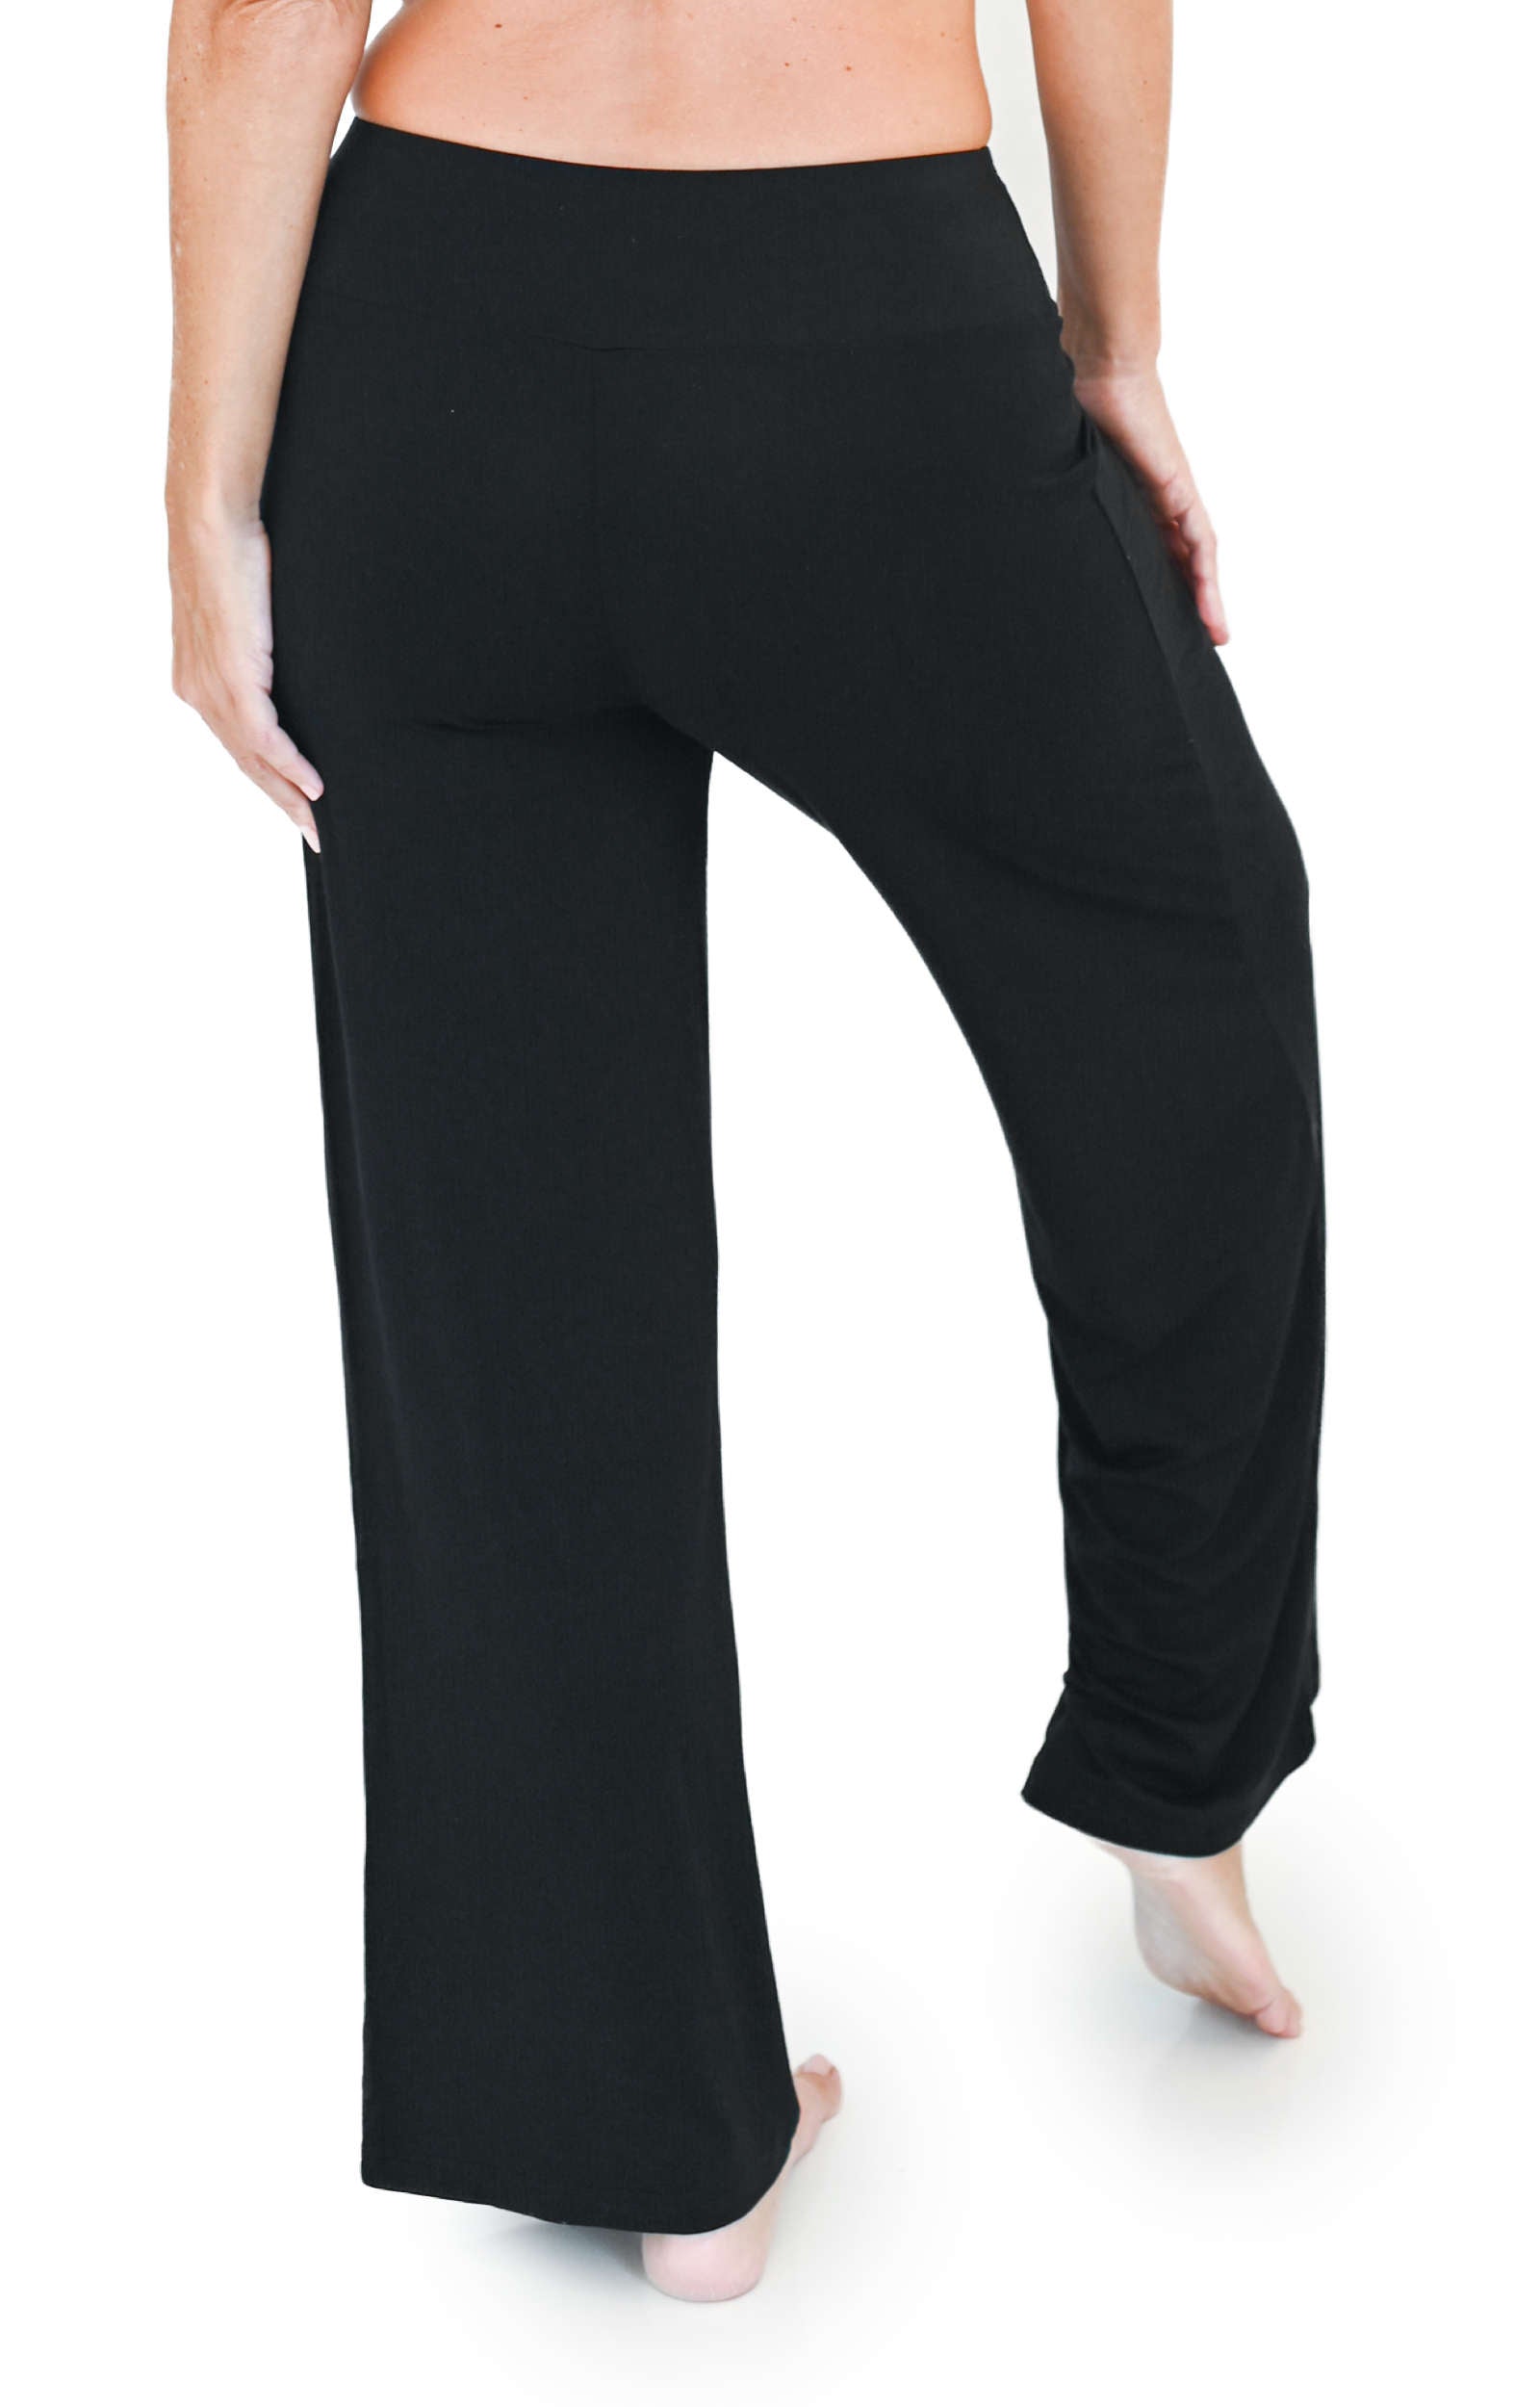 Cyan Pajama Pants for Women Pjs Bottoms Wide Leg Lounge Palazzo Yoga Sweat  Drawstring Pants L